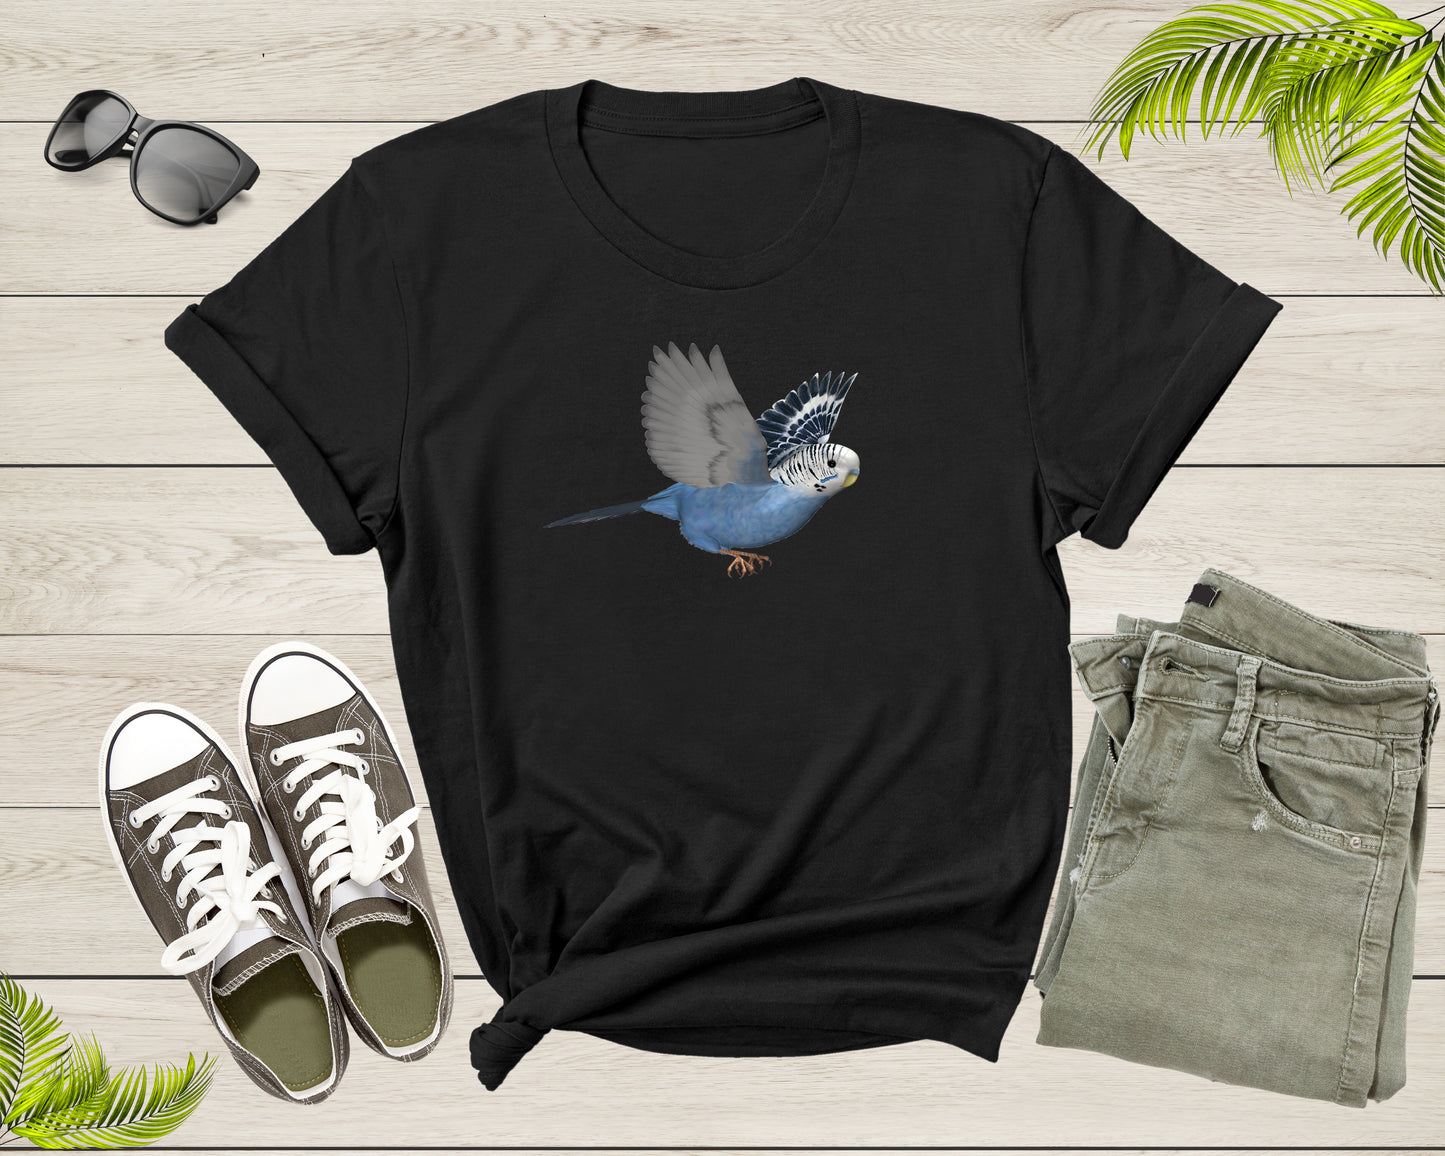 Womens Mens Cute Flying Parakeet Budgie Bird Lover Gift Shirt Present For Parakeet Lover Bird Owner Tshirt For Men Women Boys Girls T-shirt